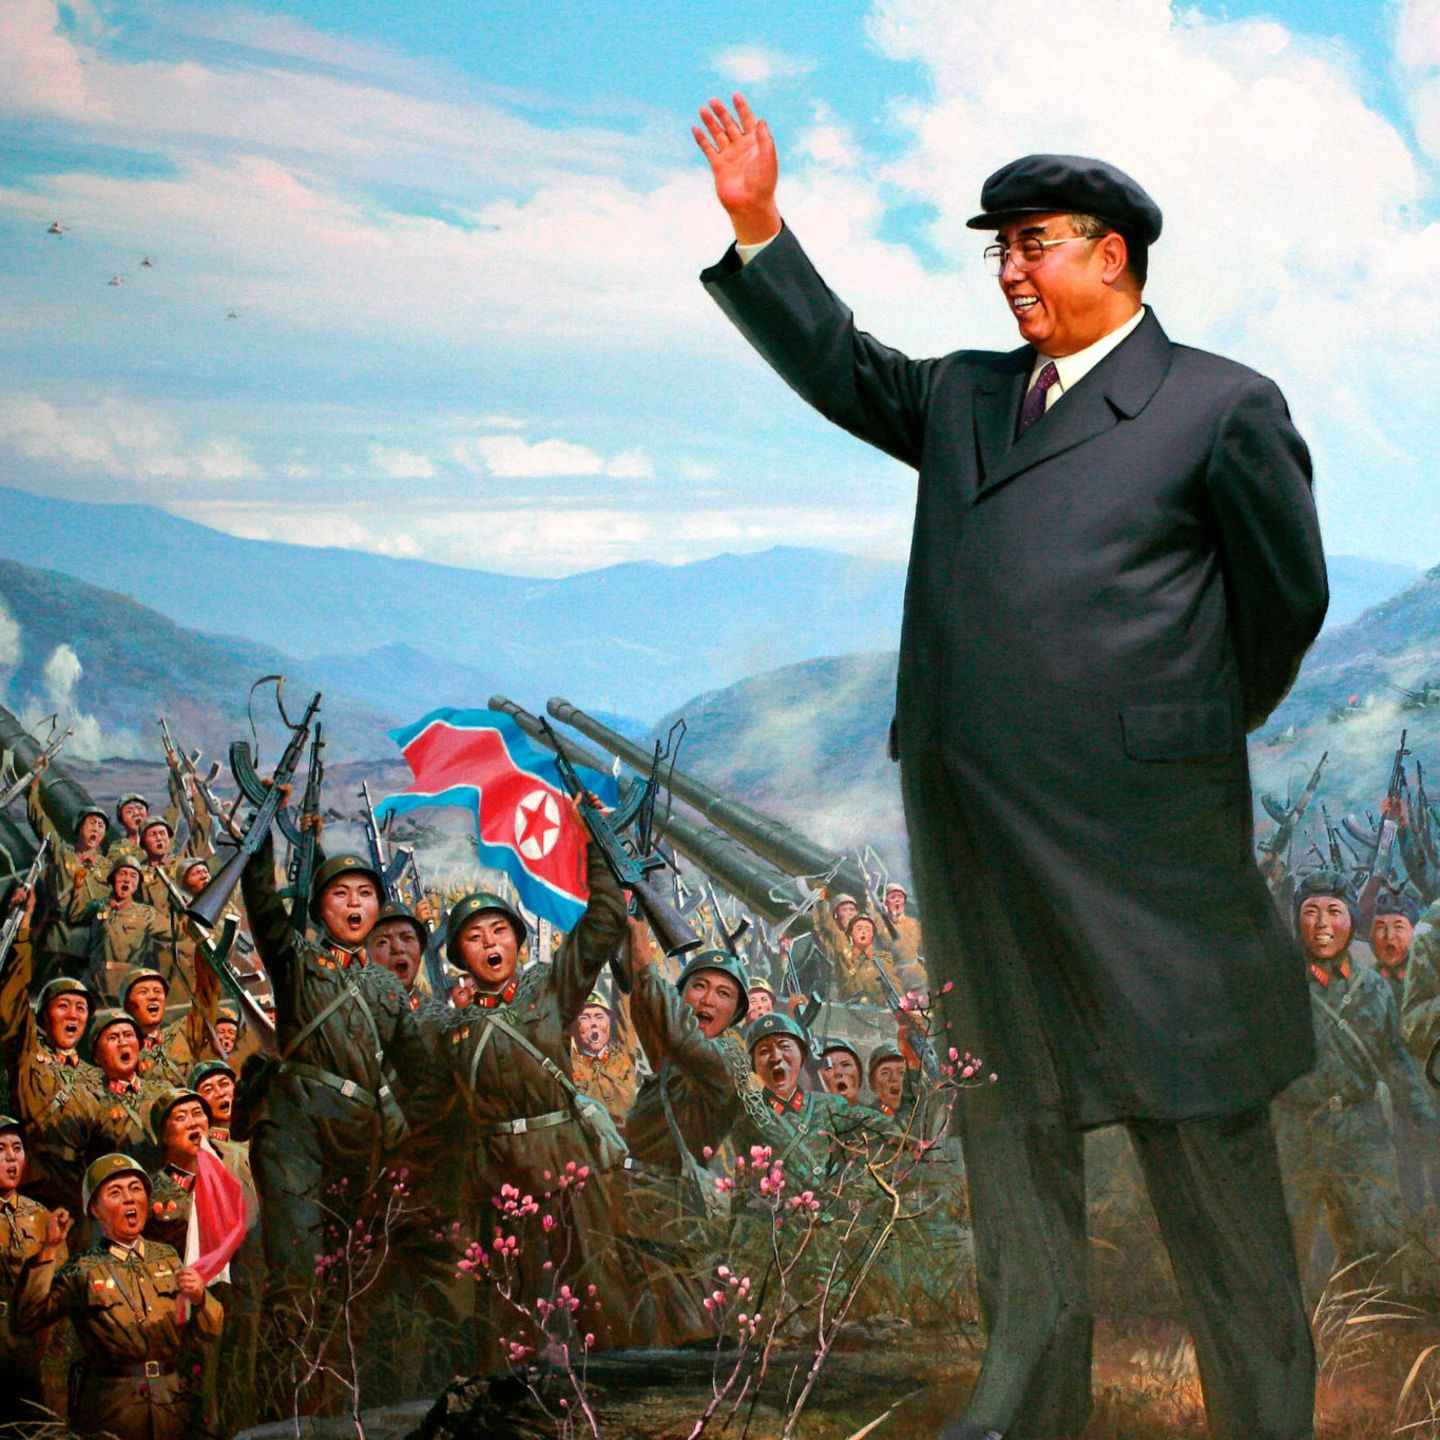 Propagandaplakat: Kim Il-sung (l.) und sein Sohn und Nachfolger Kim Jong-il lassen sich als Staatenlenker darstellen, die von den Soldaten gefeiert werden